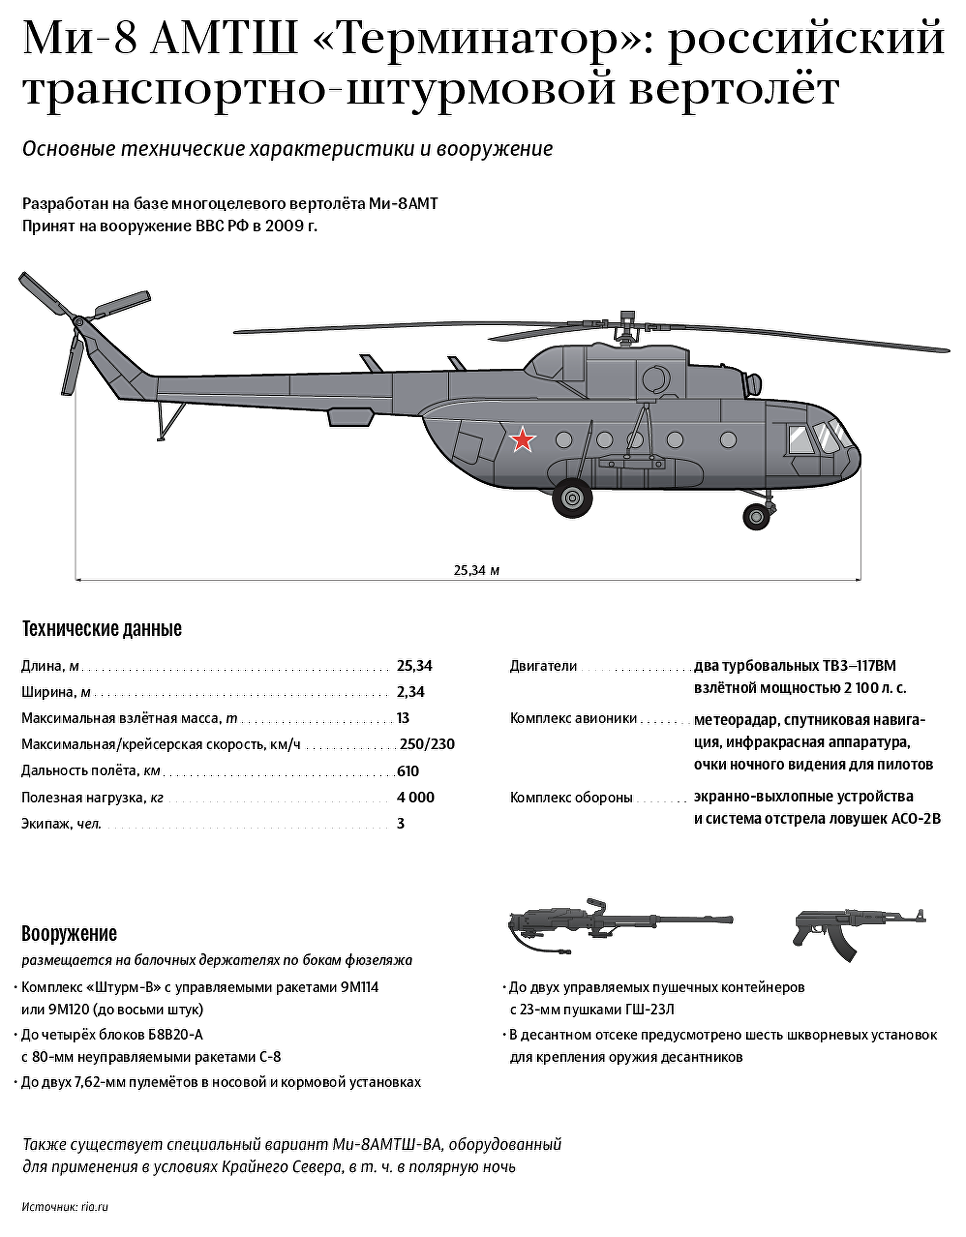 Вертолеты семейства ми-8. история и характеристики - биографии и справки